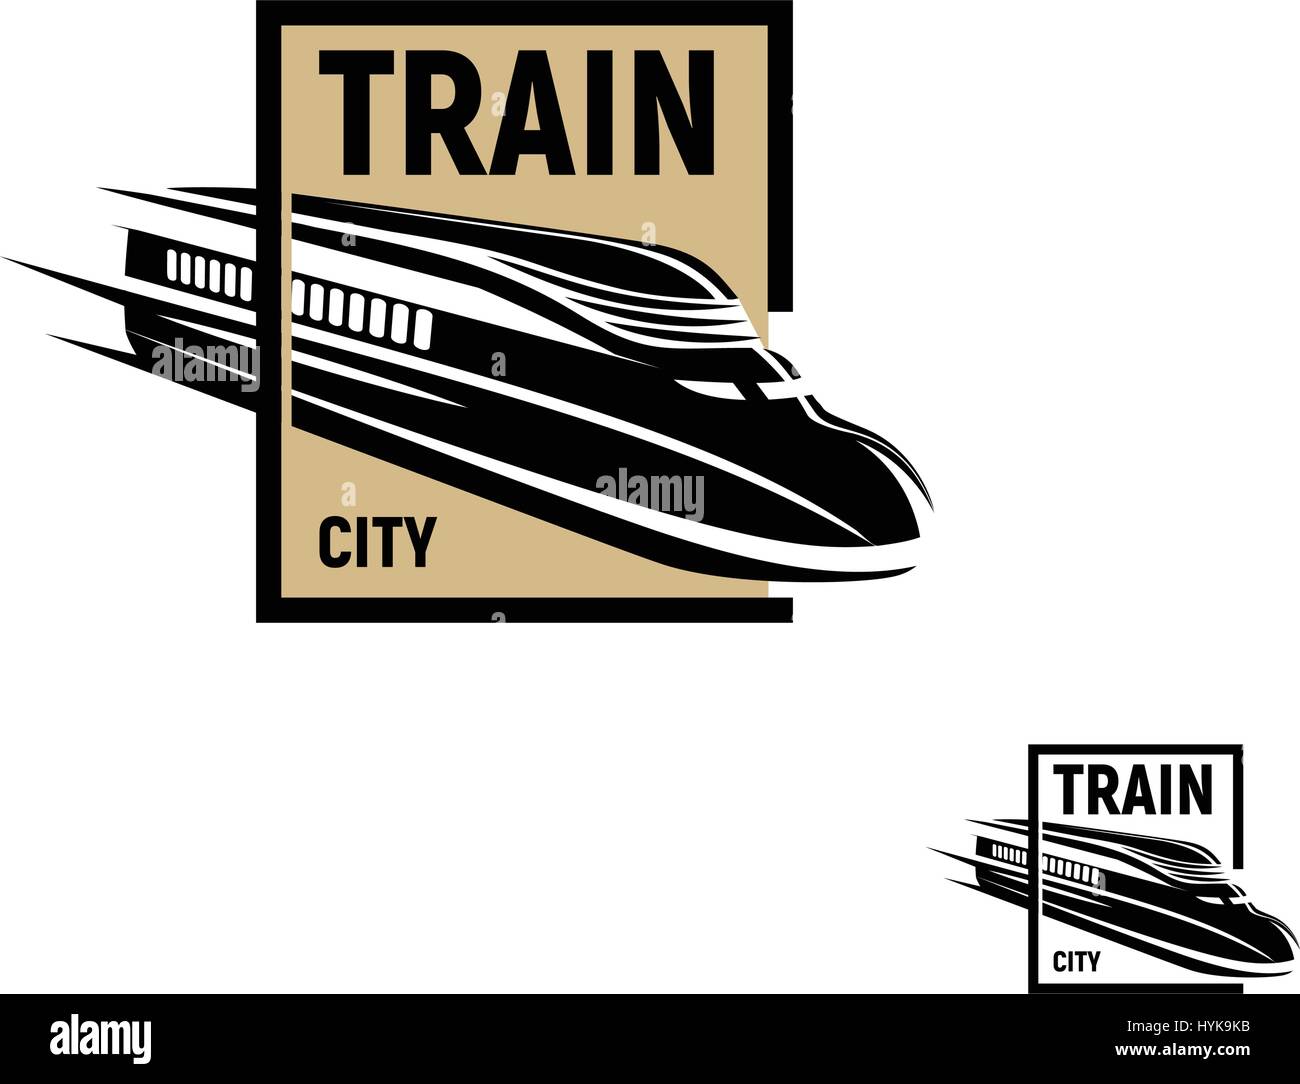 Resumen aisladas de color negro de tren en Brown Square logotipo sobre fondo blanco, Monocromo moderno logotipo, transporte ferroviario railroad elemento de estilo de grabado ilustración vectorial Ilustración del Vector